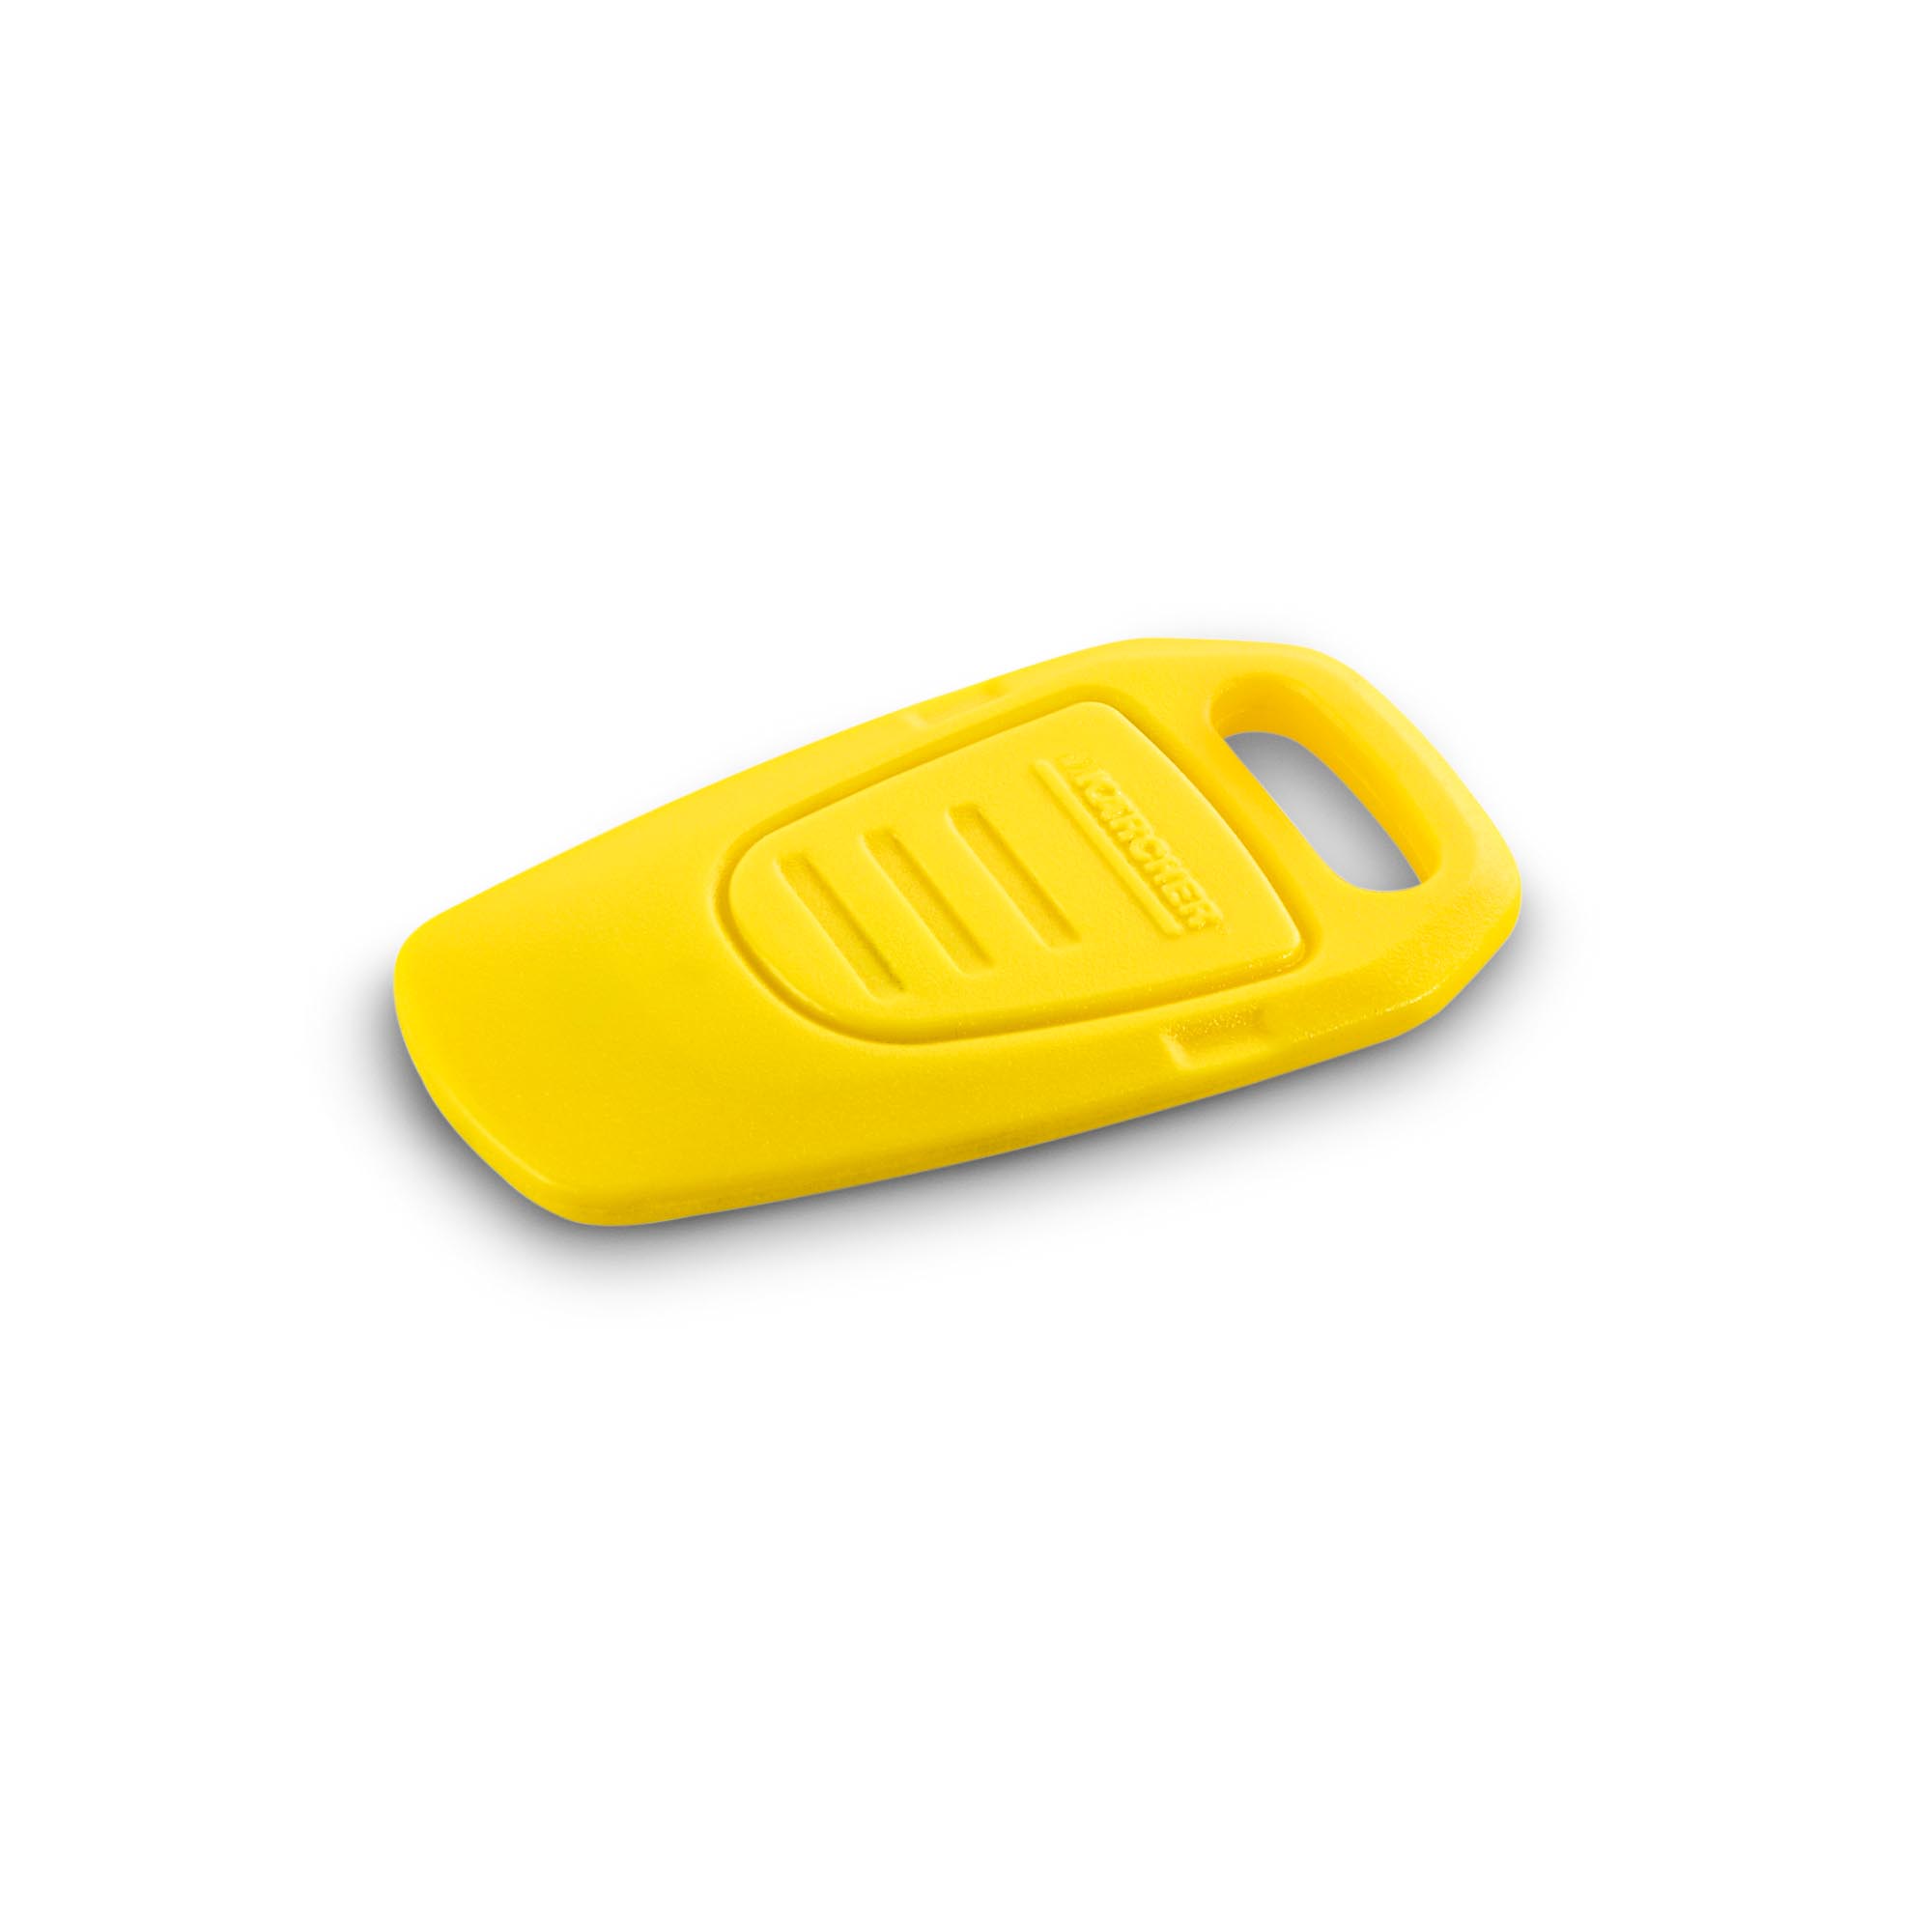 Kärcher KIK-Schlüssel, gelb